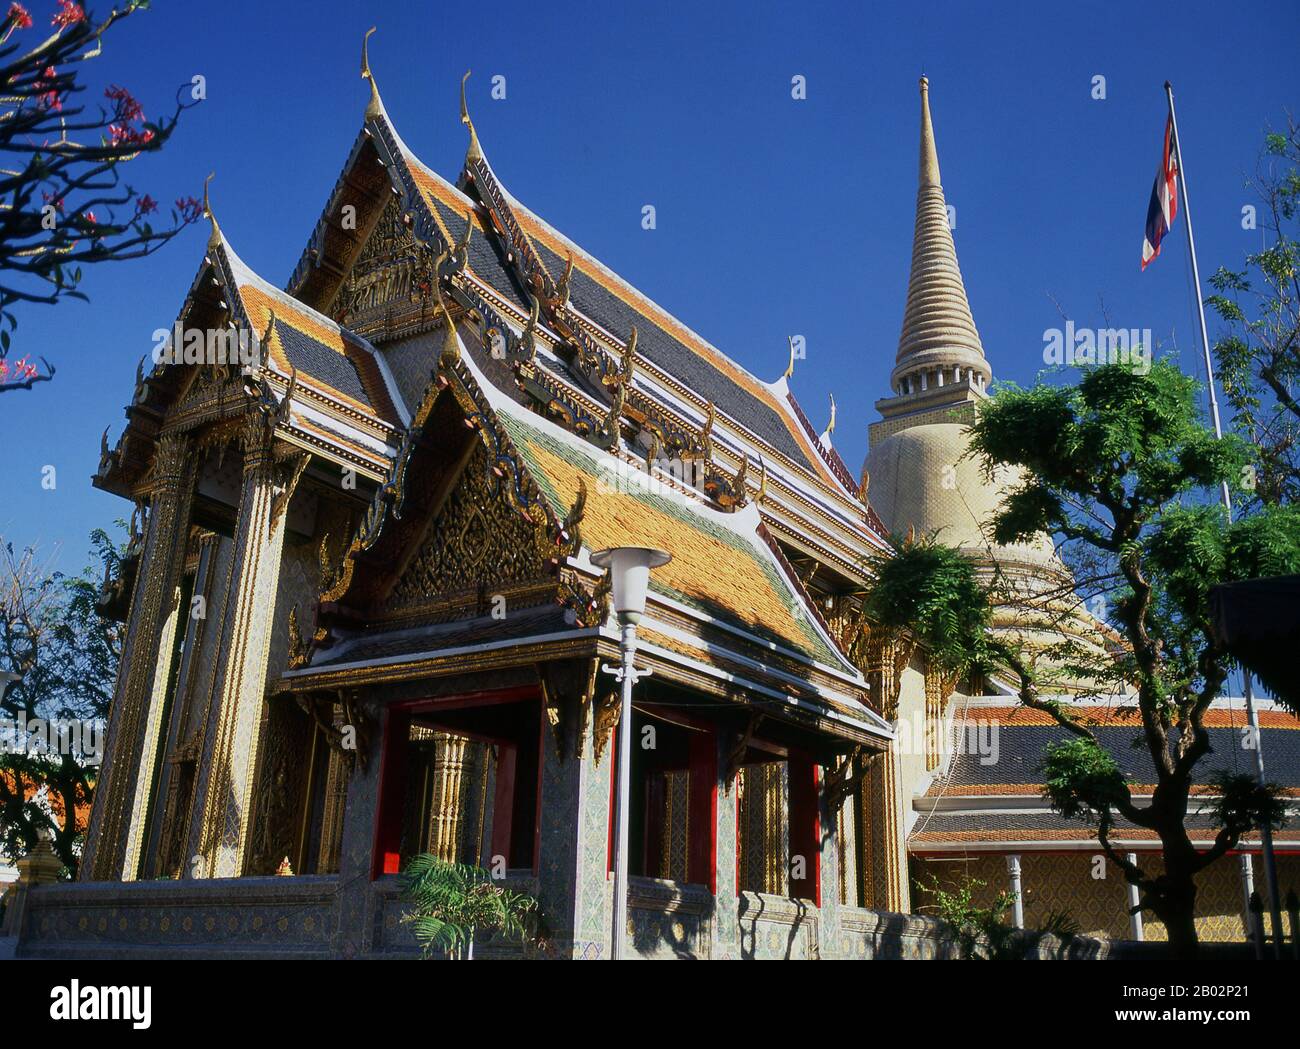 Wat Ratchabophit (Rajabophit) fu costruito durante il regno del re Chulalongkorn (Rama V, 1868 - 1910). Il tempio fonde gli stili architettonici orientale e occidentale ed è noto per il suo chiostro circolare che racchiude i grandi godi in stile Sri Lanka e che collega l'ubosot (bot) a nord con il viharn a sud. Foto Stock